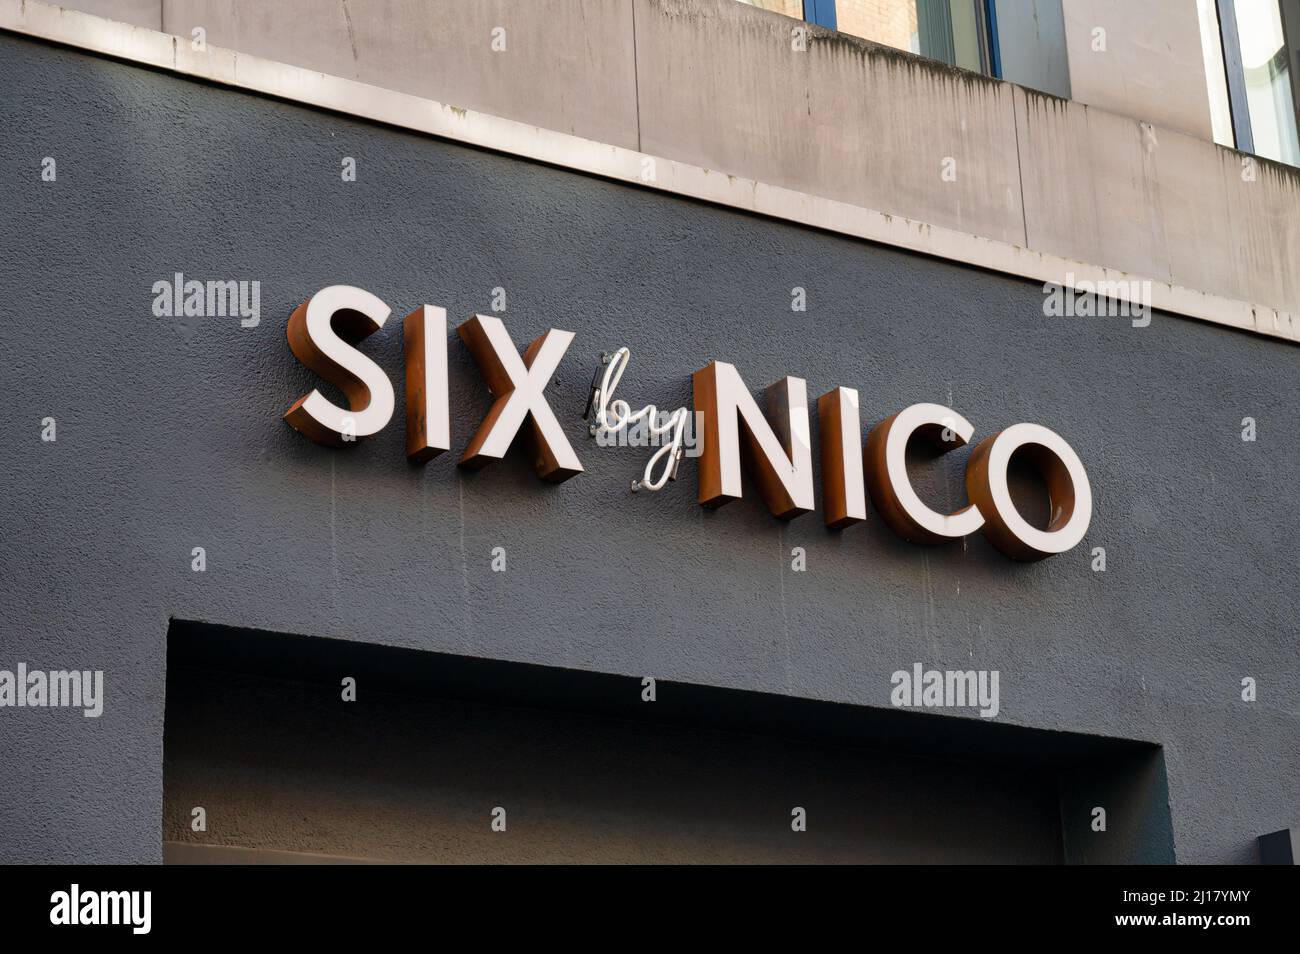 Belfast, Großbritannien - 21. Februar 2022: Das Schild für das Restaurant Six by Nico in Belfast, Nordirland. Stockfoto